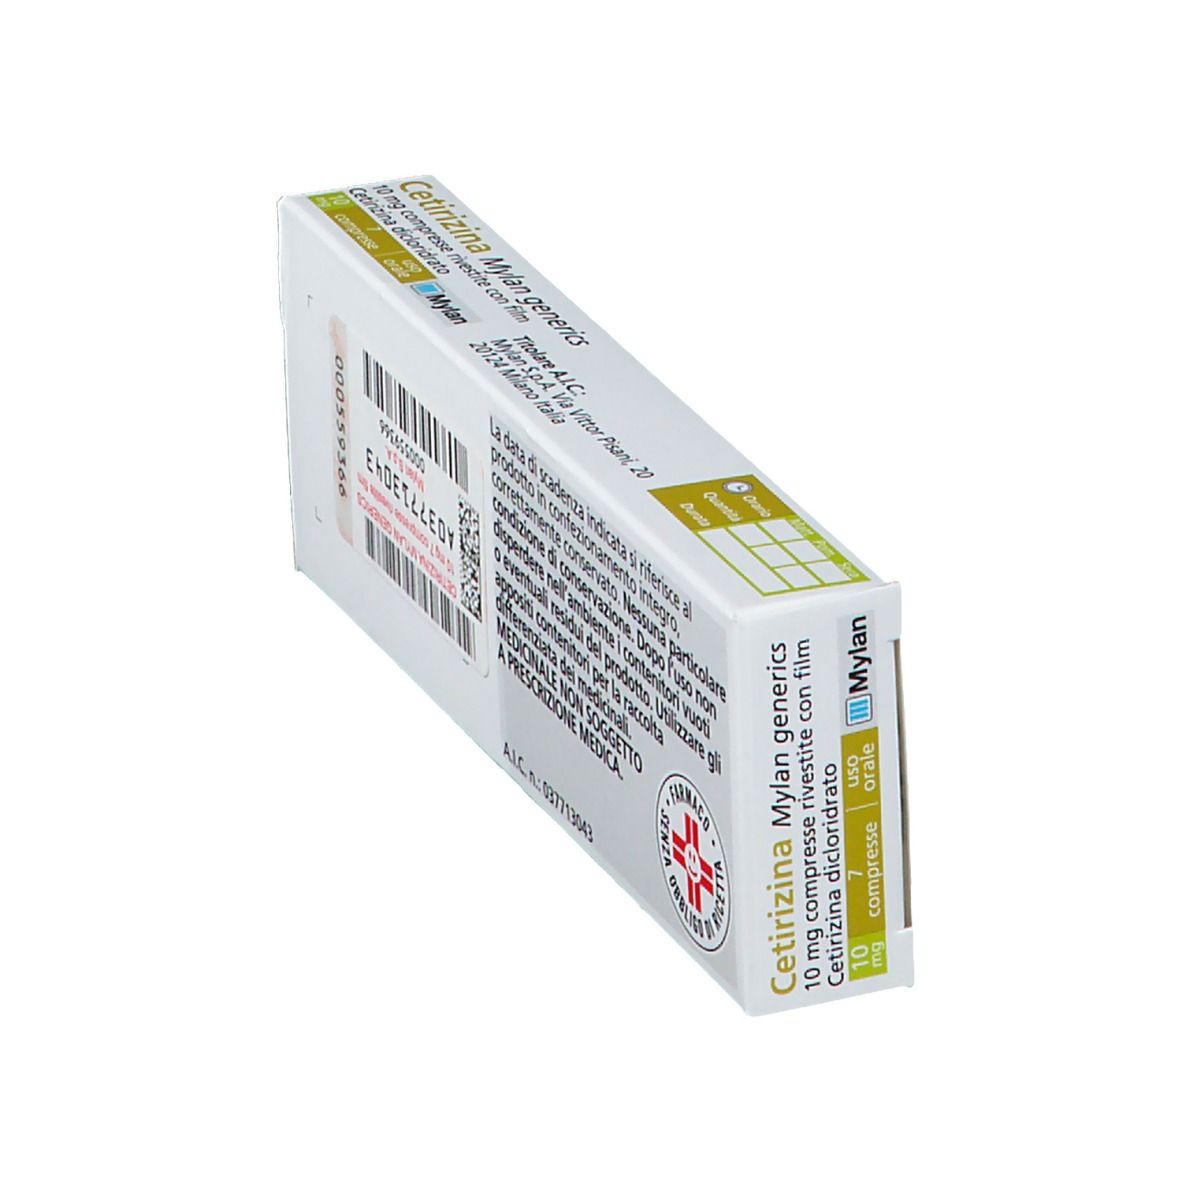 Cetirizina Mylan generics 10 mg Compresse rivestite